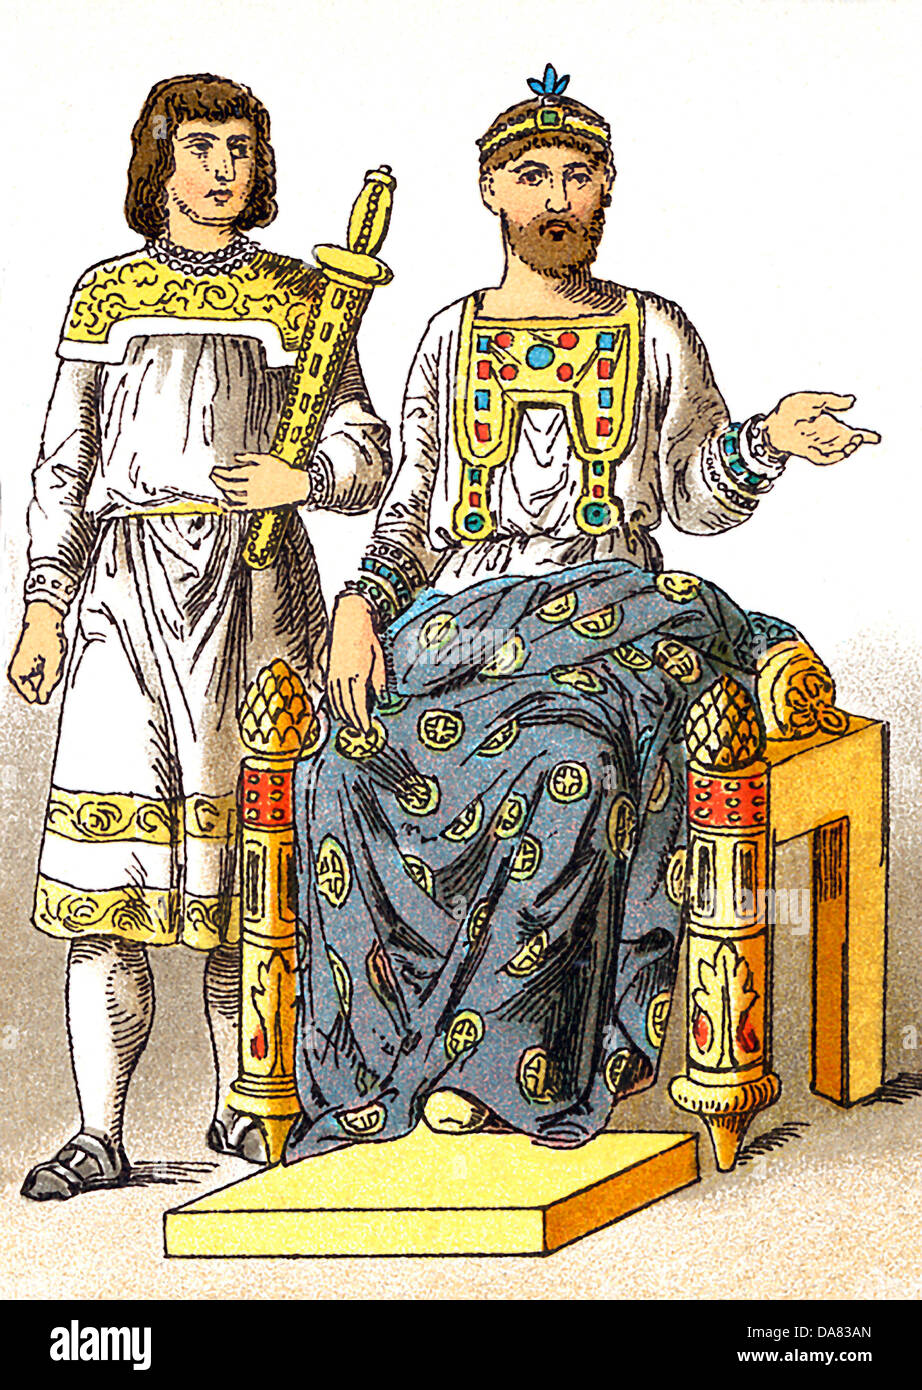 Les figures byzantines représentent, de gauche à droite, un porteur d'armes et l'empereur Basileus (A.D. 886). Banque D'Images